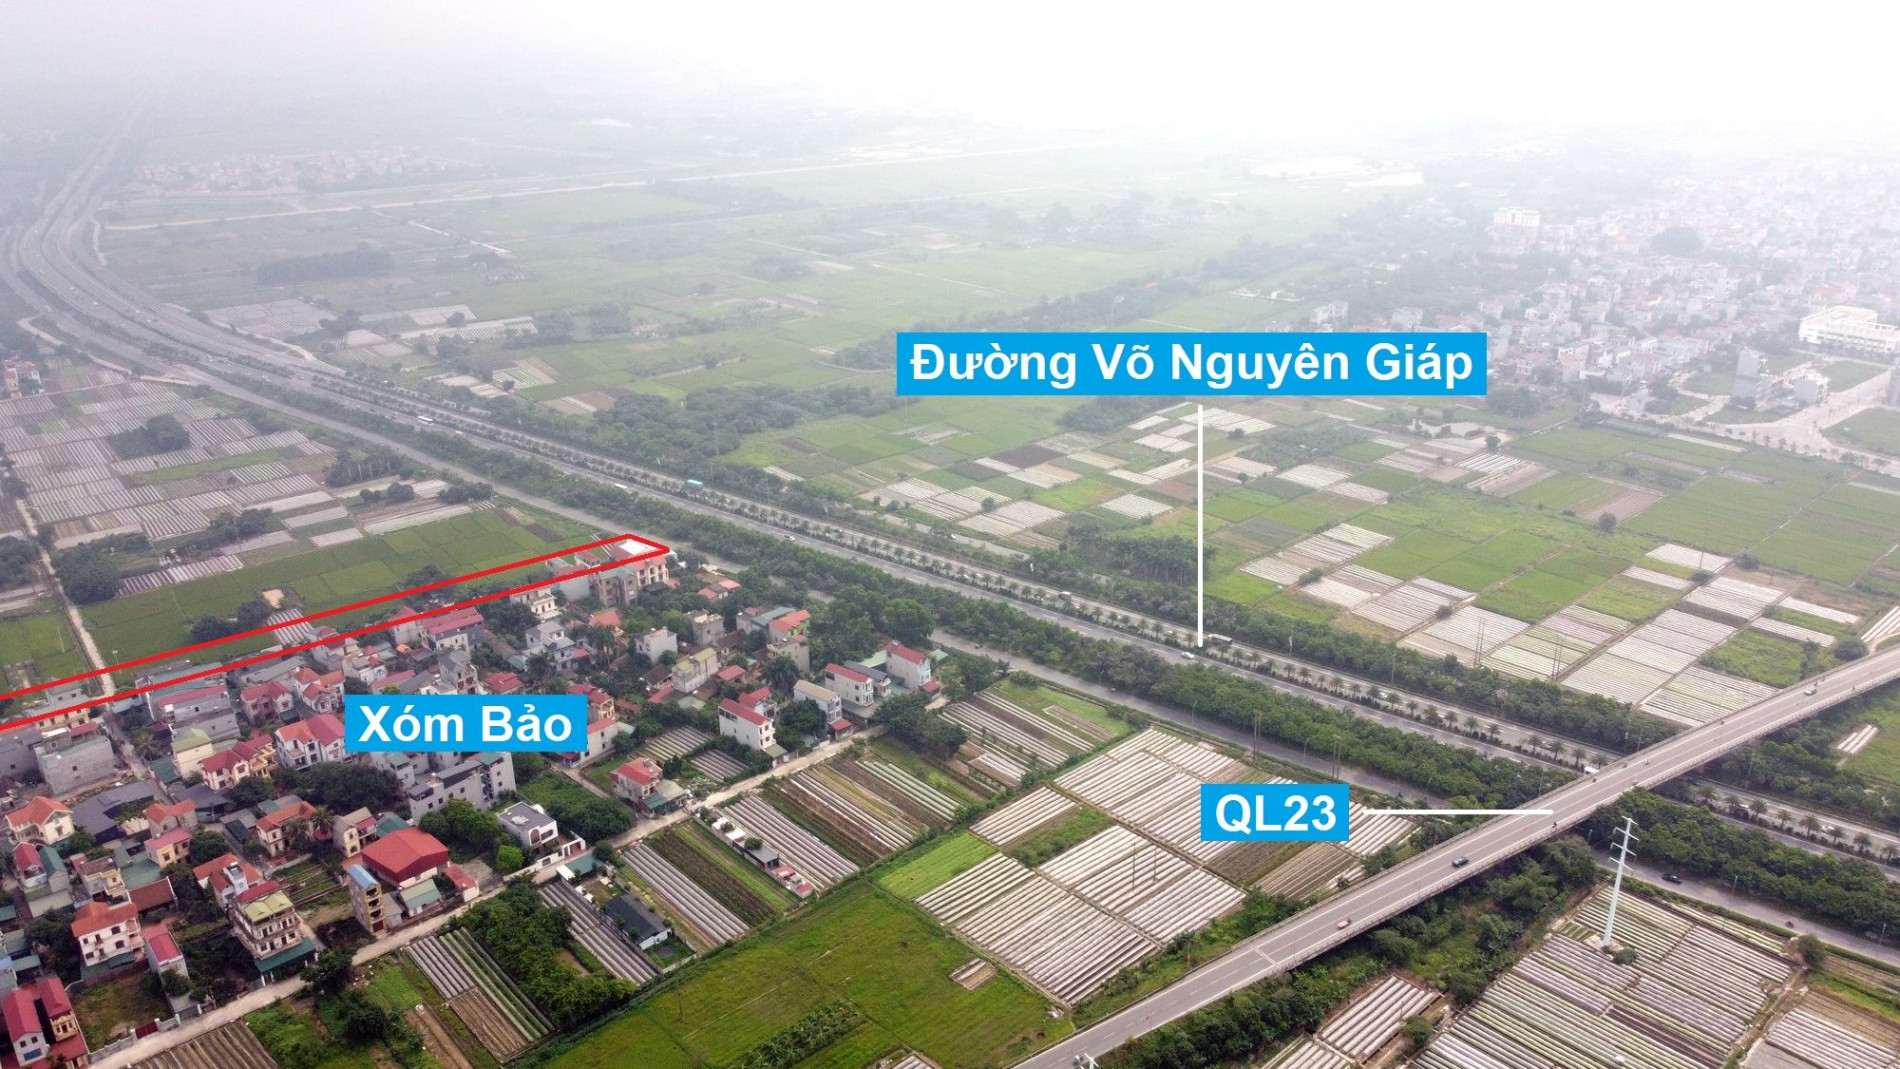 Đường sẽ mở theo quy hoạch ở xã Vân Nội, Đông Anh, Hà Nội (phần 3)